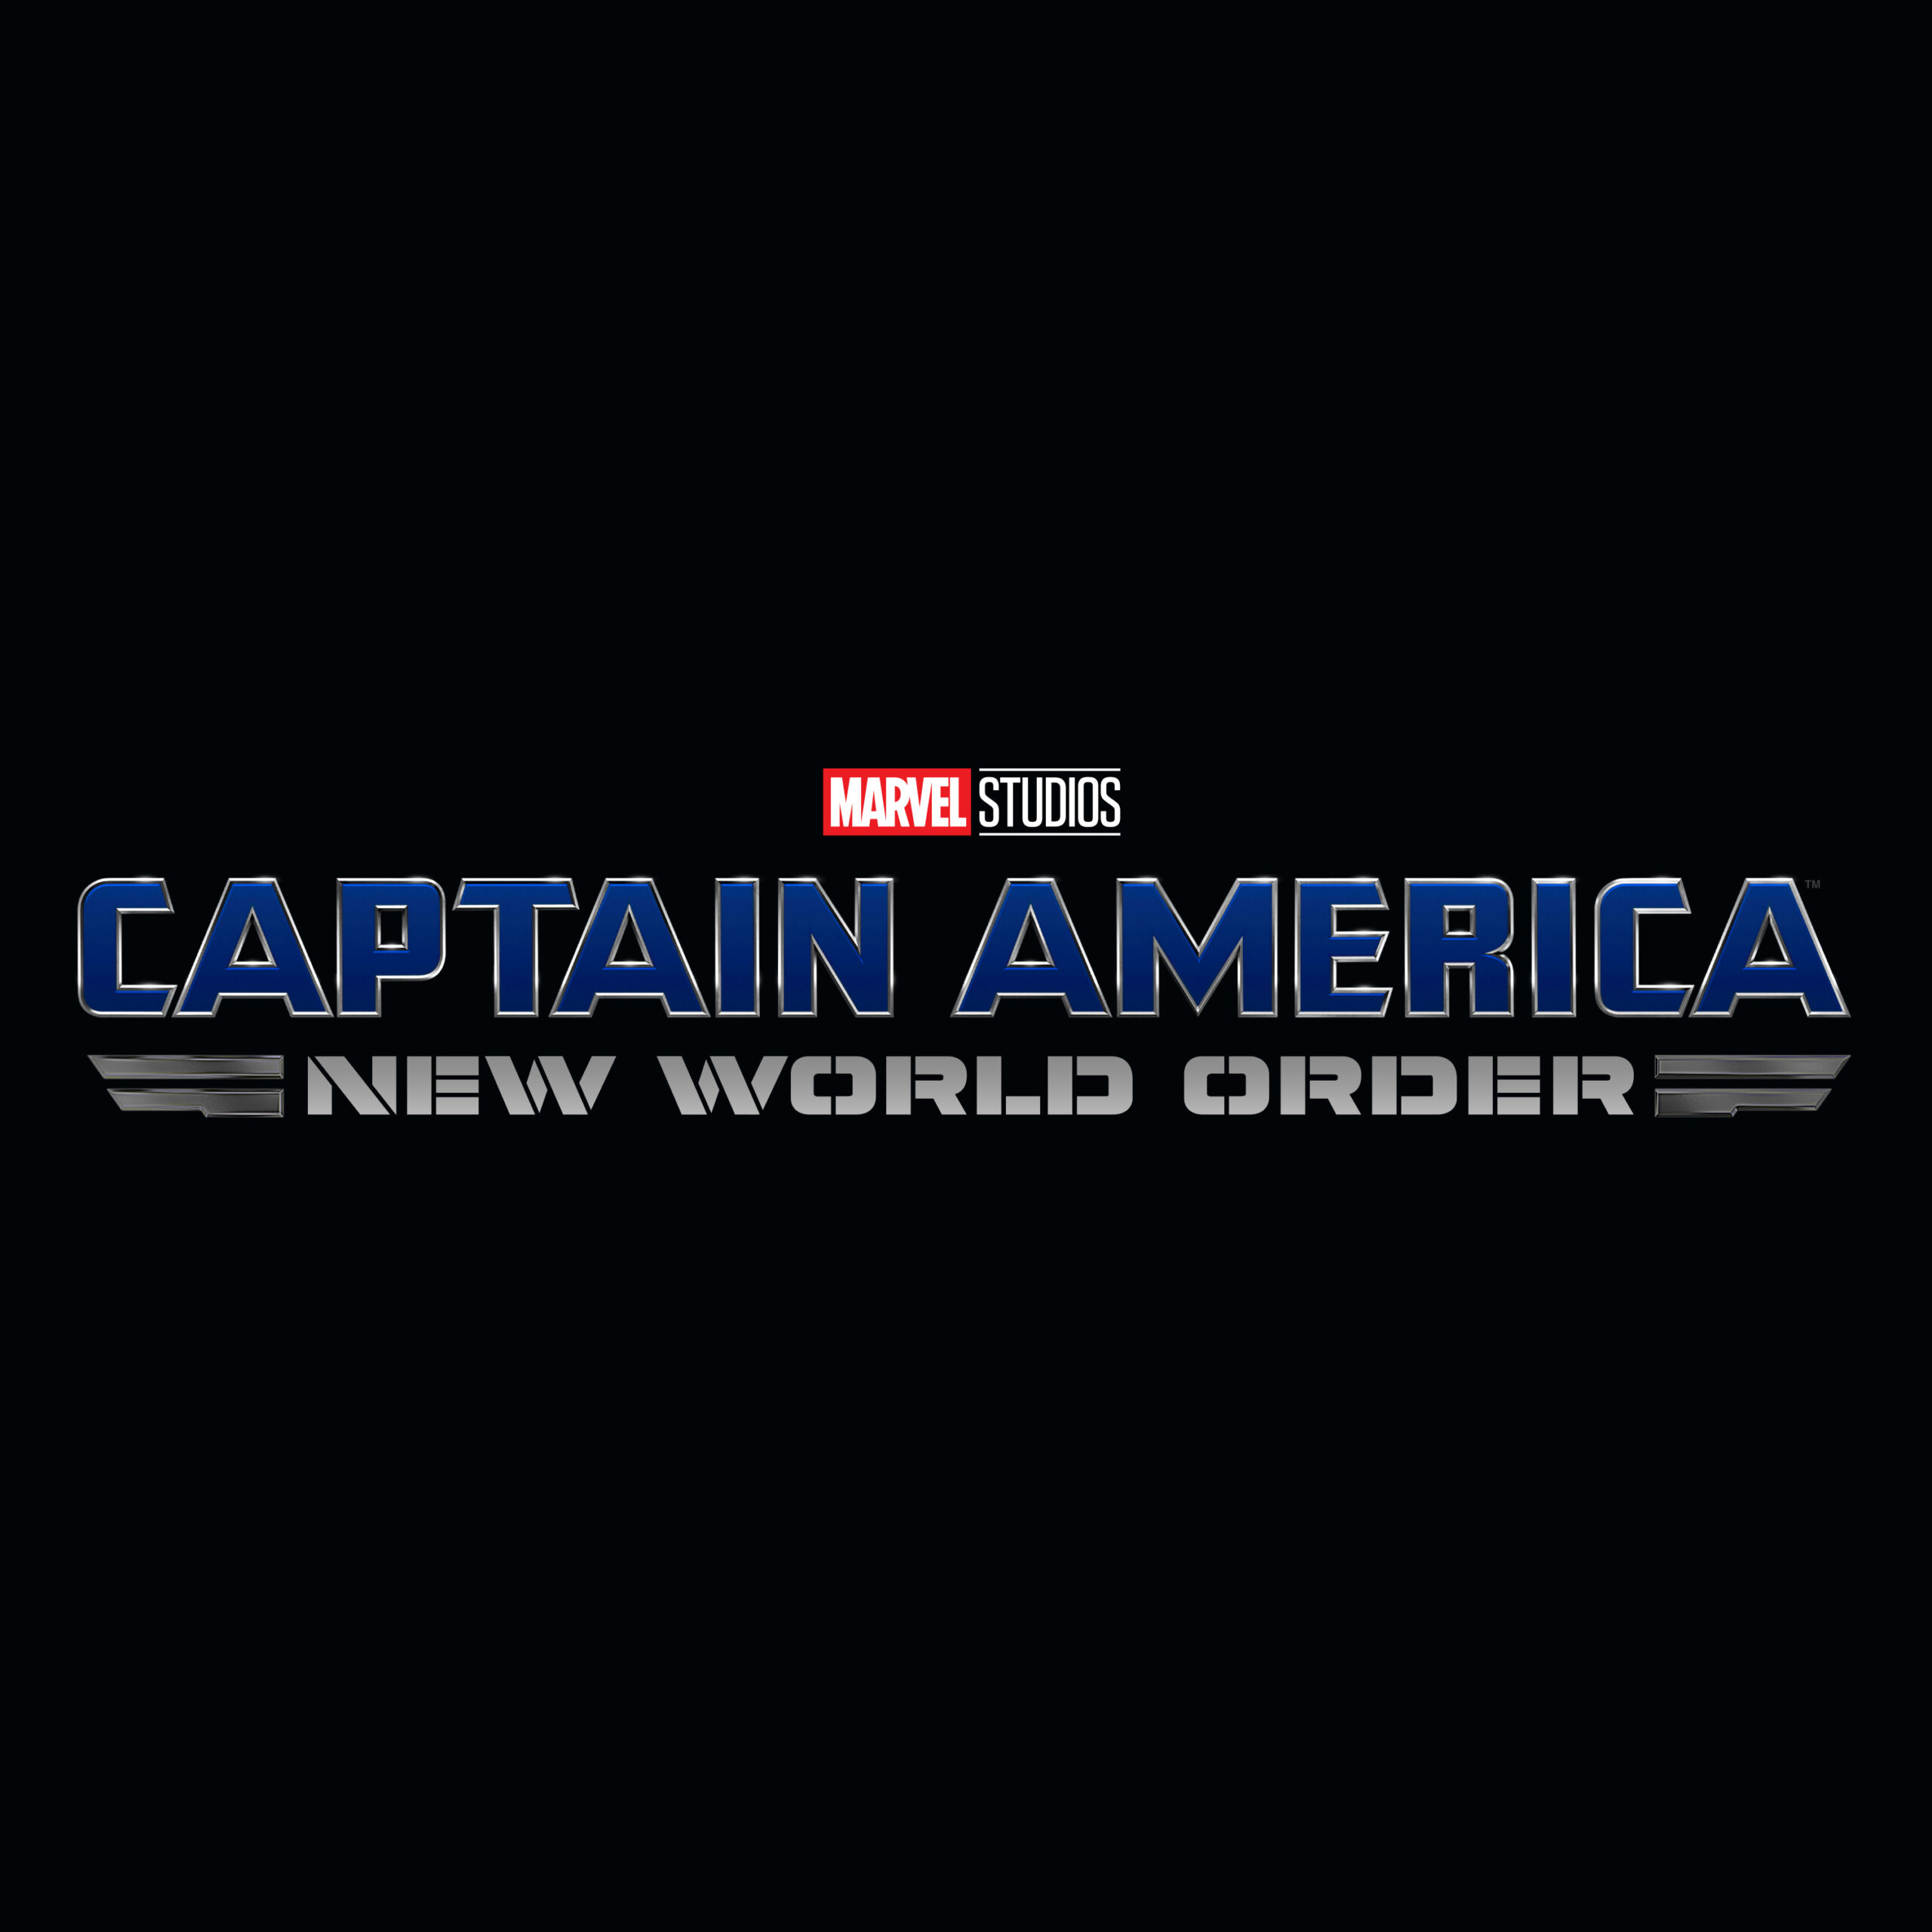 Captain America: New World Order rumors